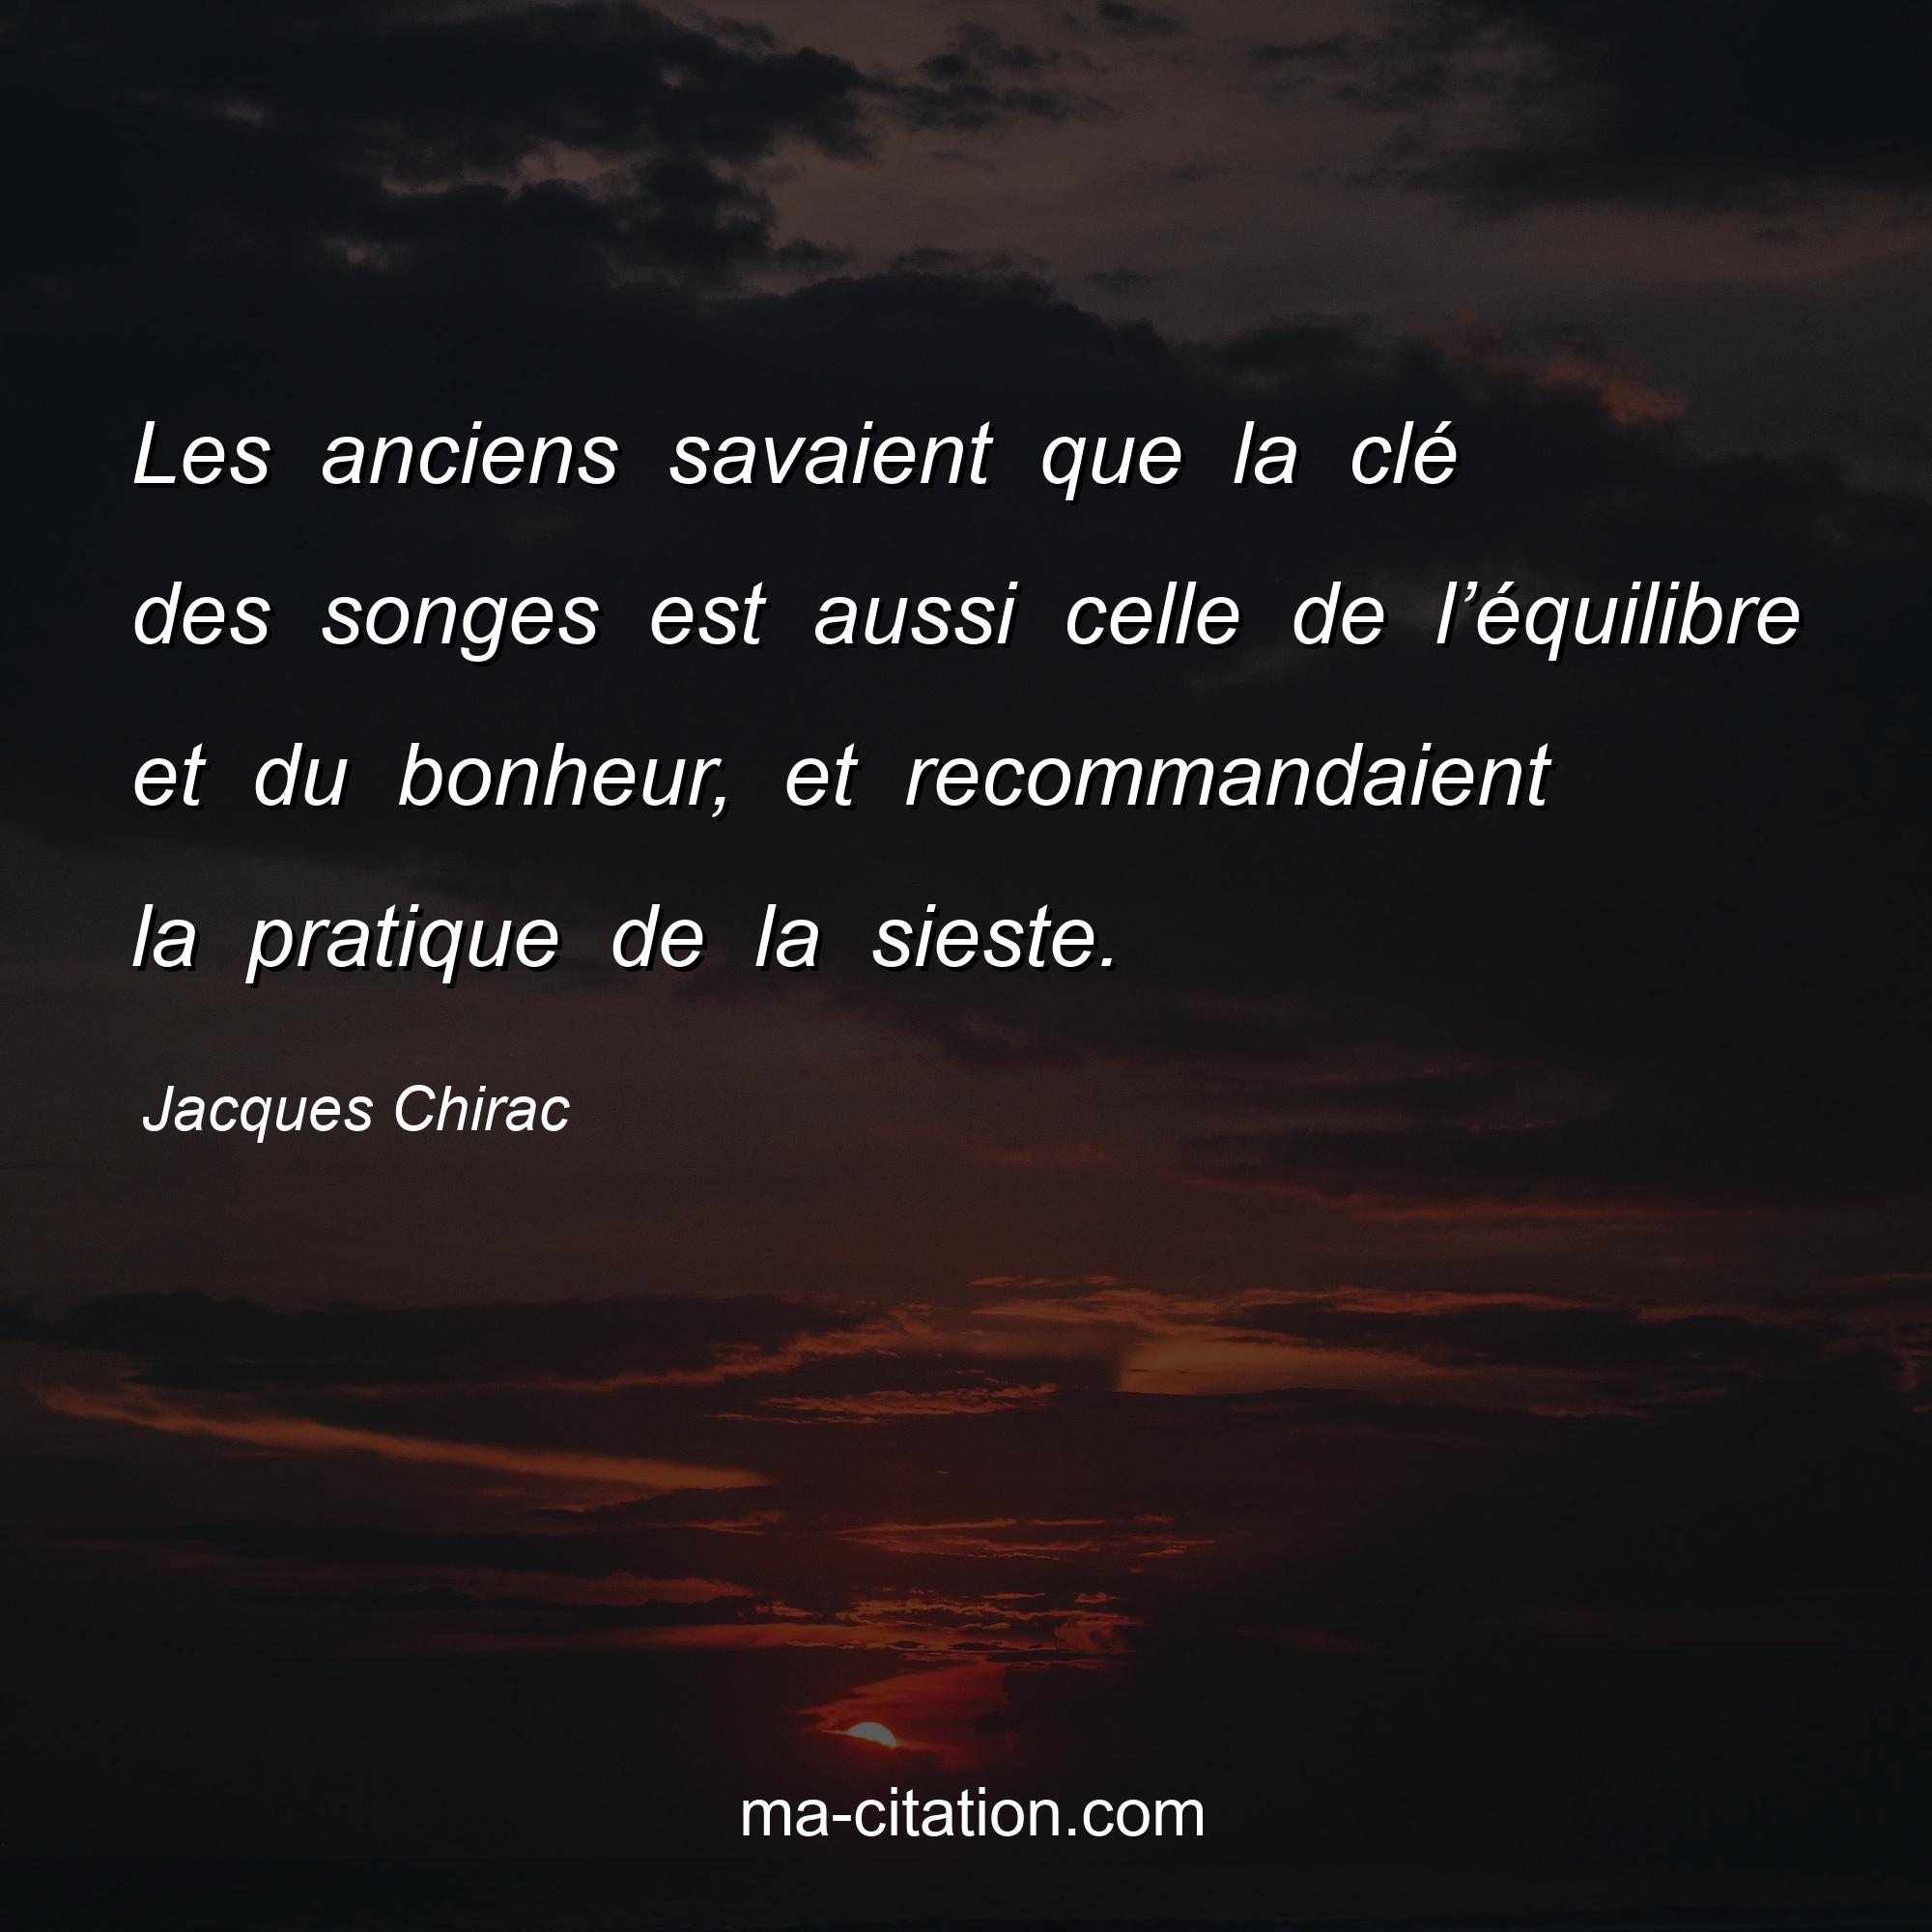 Jacques Chirac : Les anciens savaient que la clé des songes est aussi celle de l’équilibre et du bonheur, et recommandaient la pratique de la sieste.